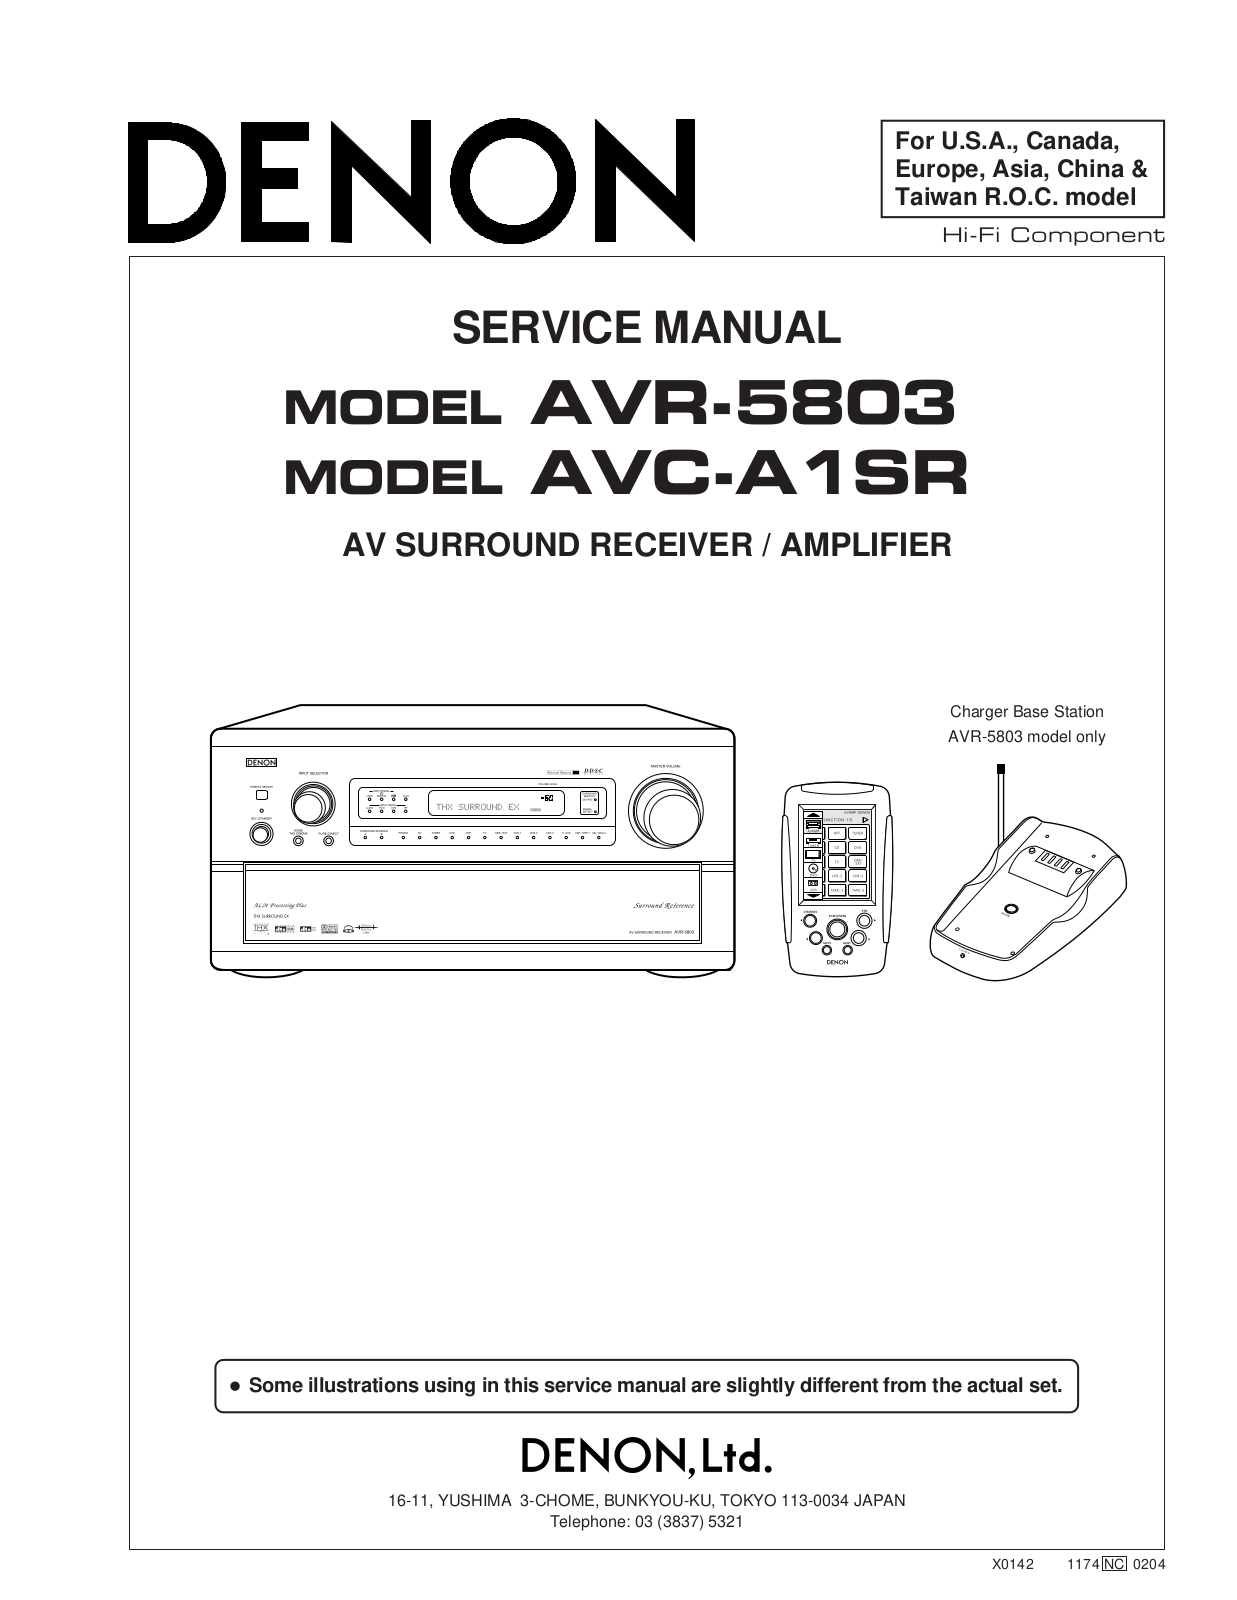 Denon AVR-5803, AVC-A1SR Schematic